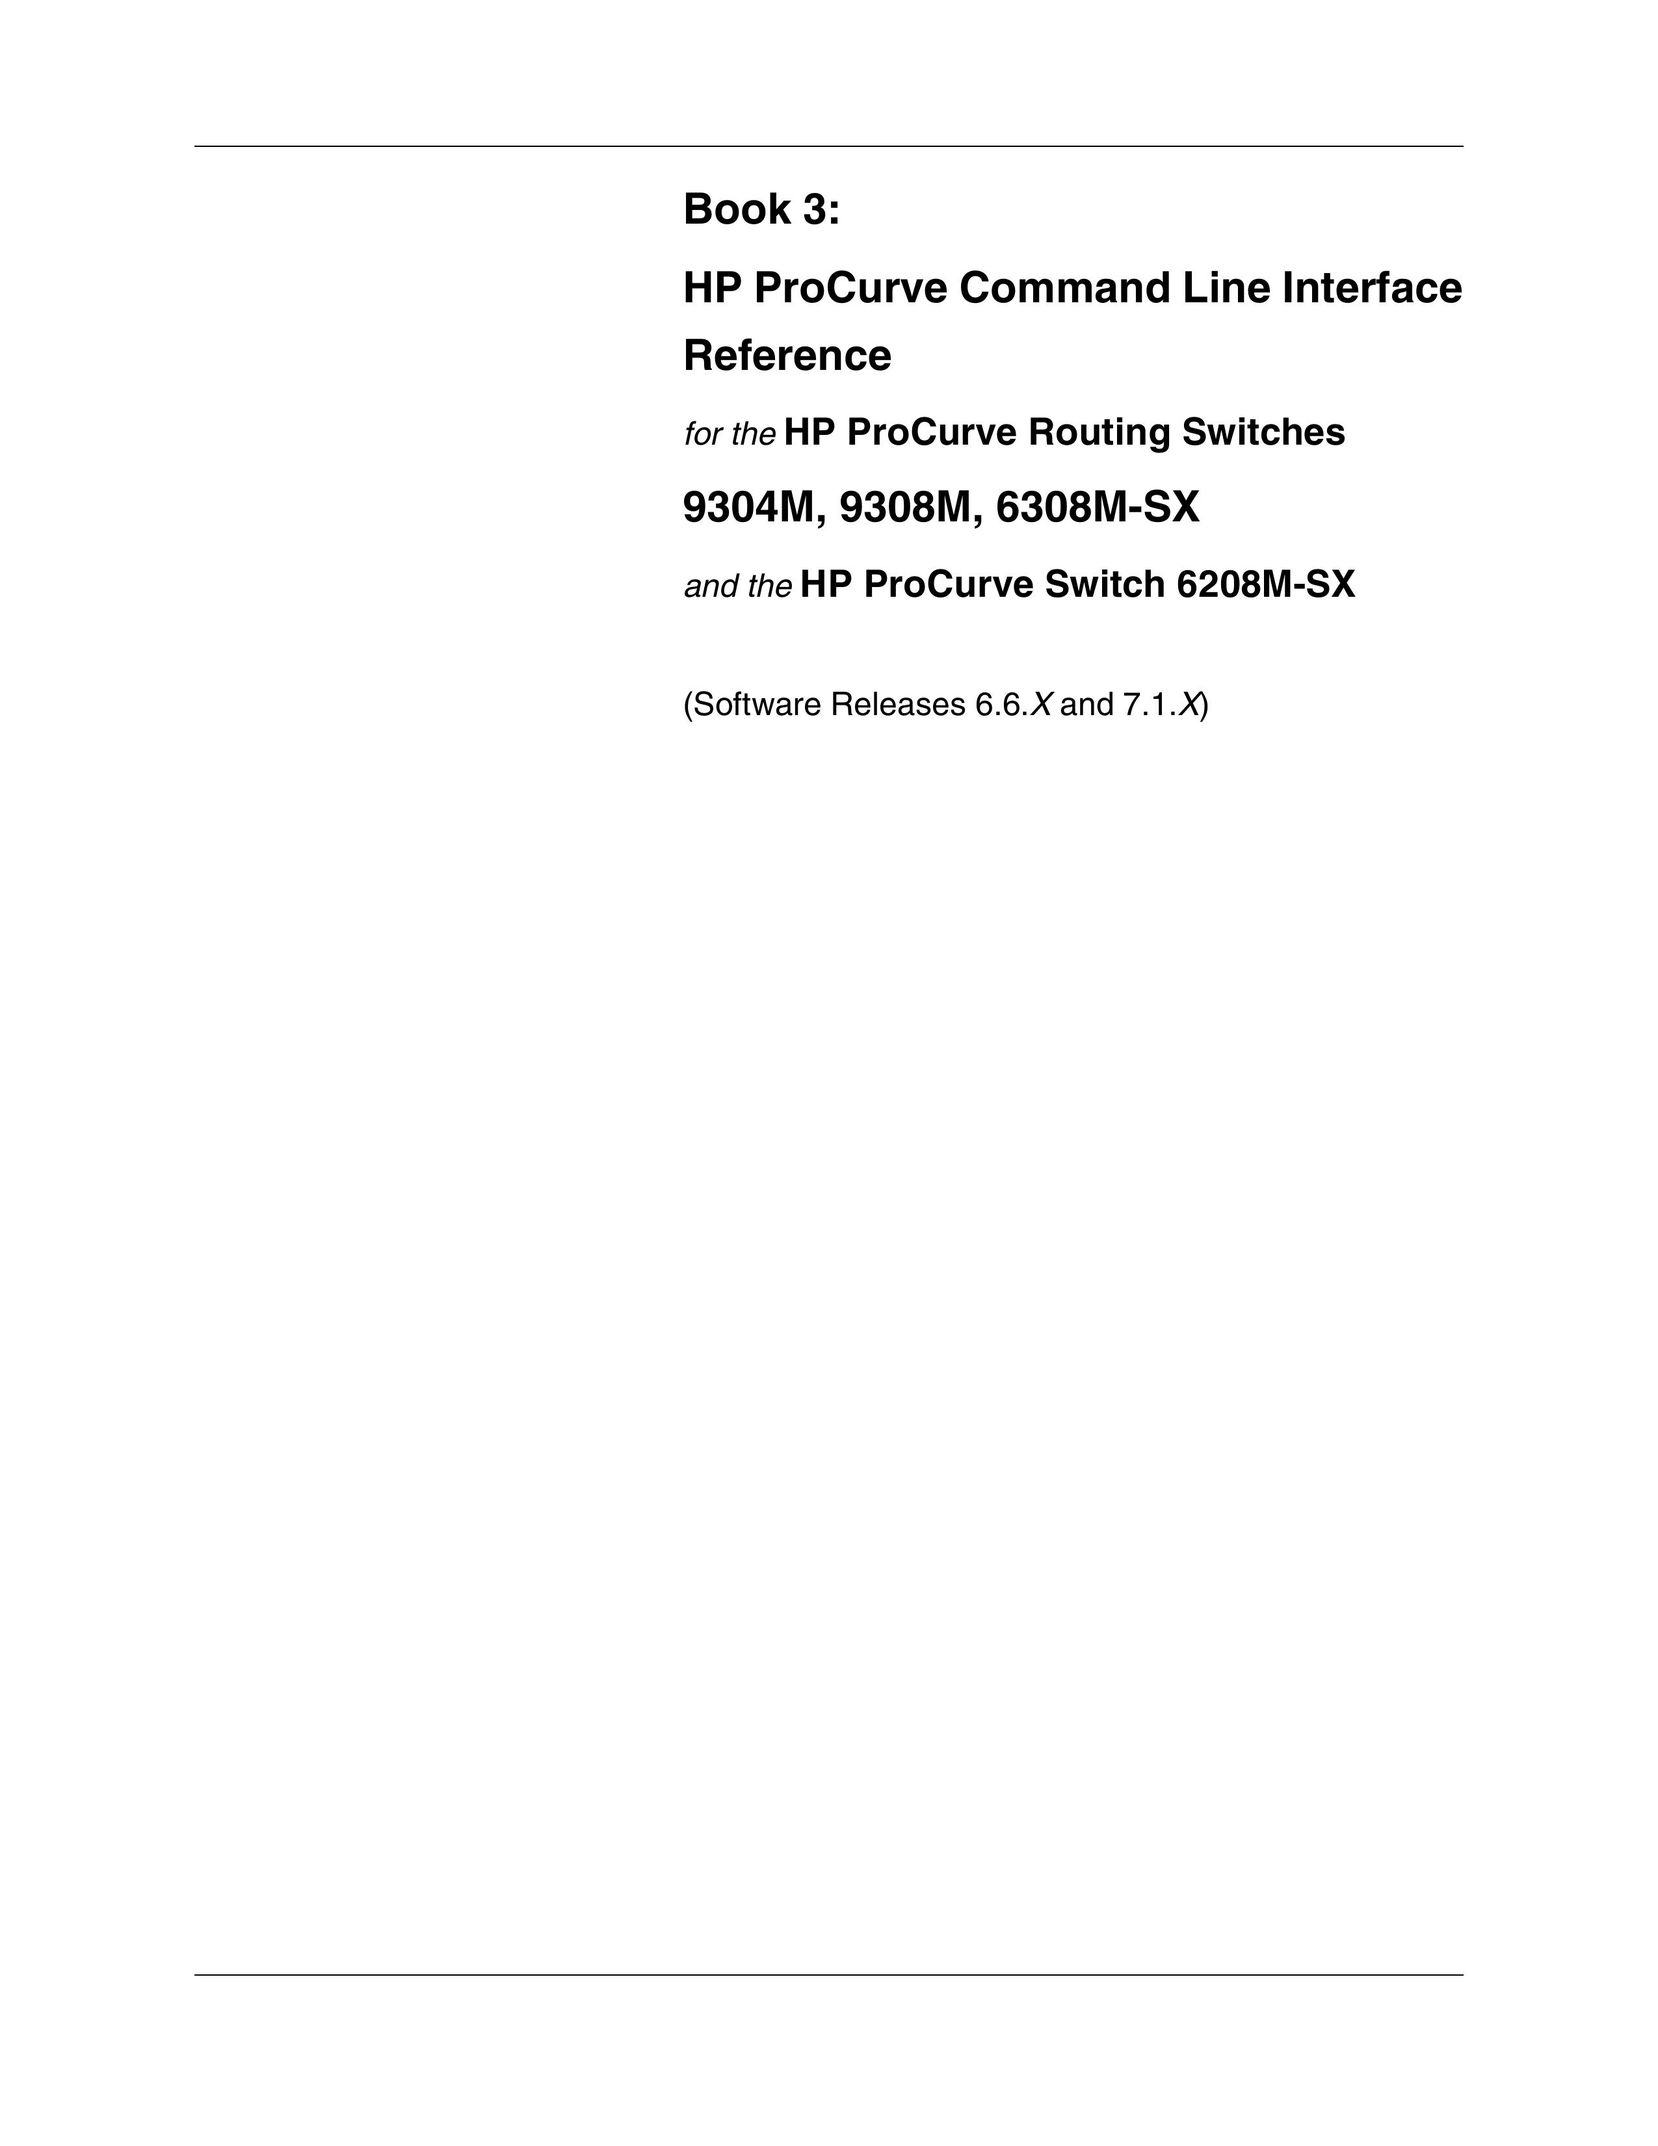 HP (Hewlett-Packard) 6208M-SX Network Router User Manual